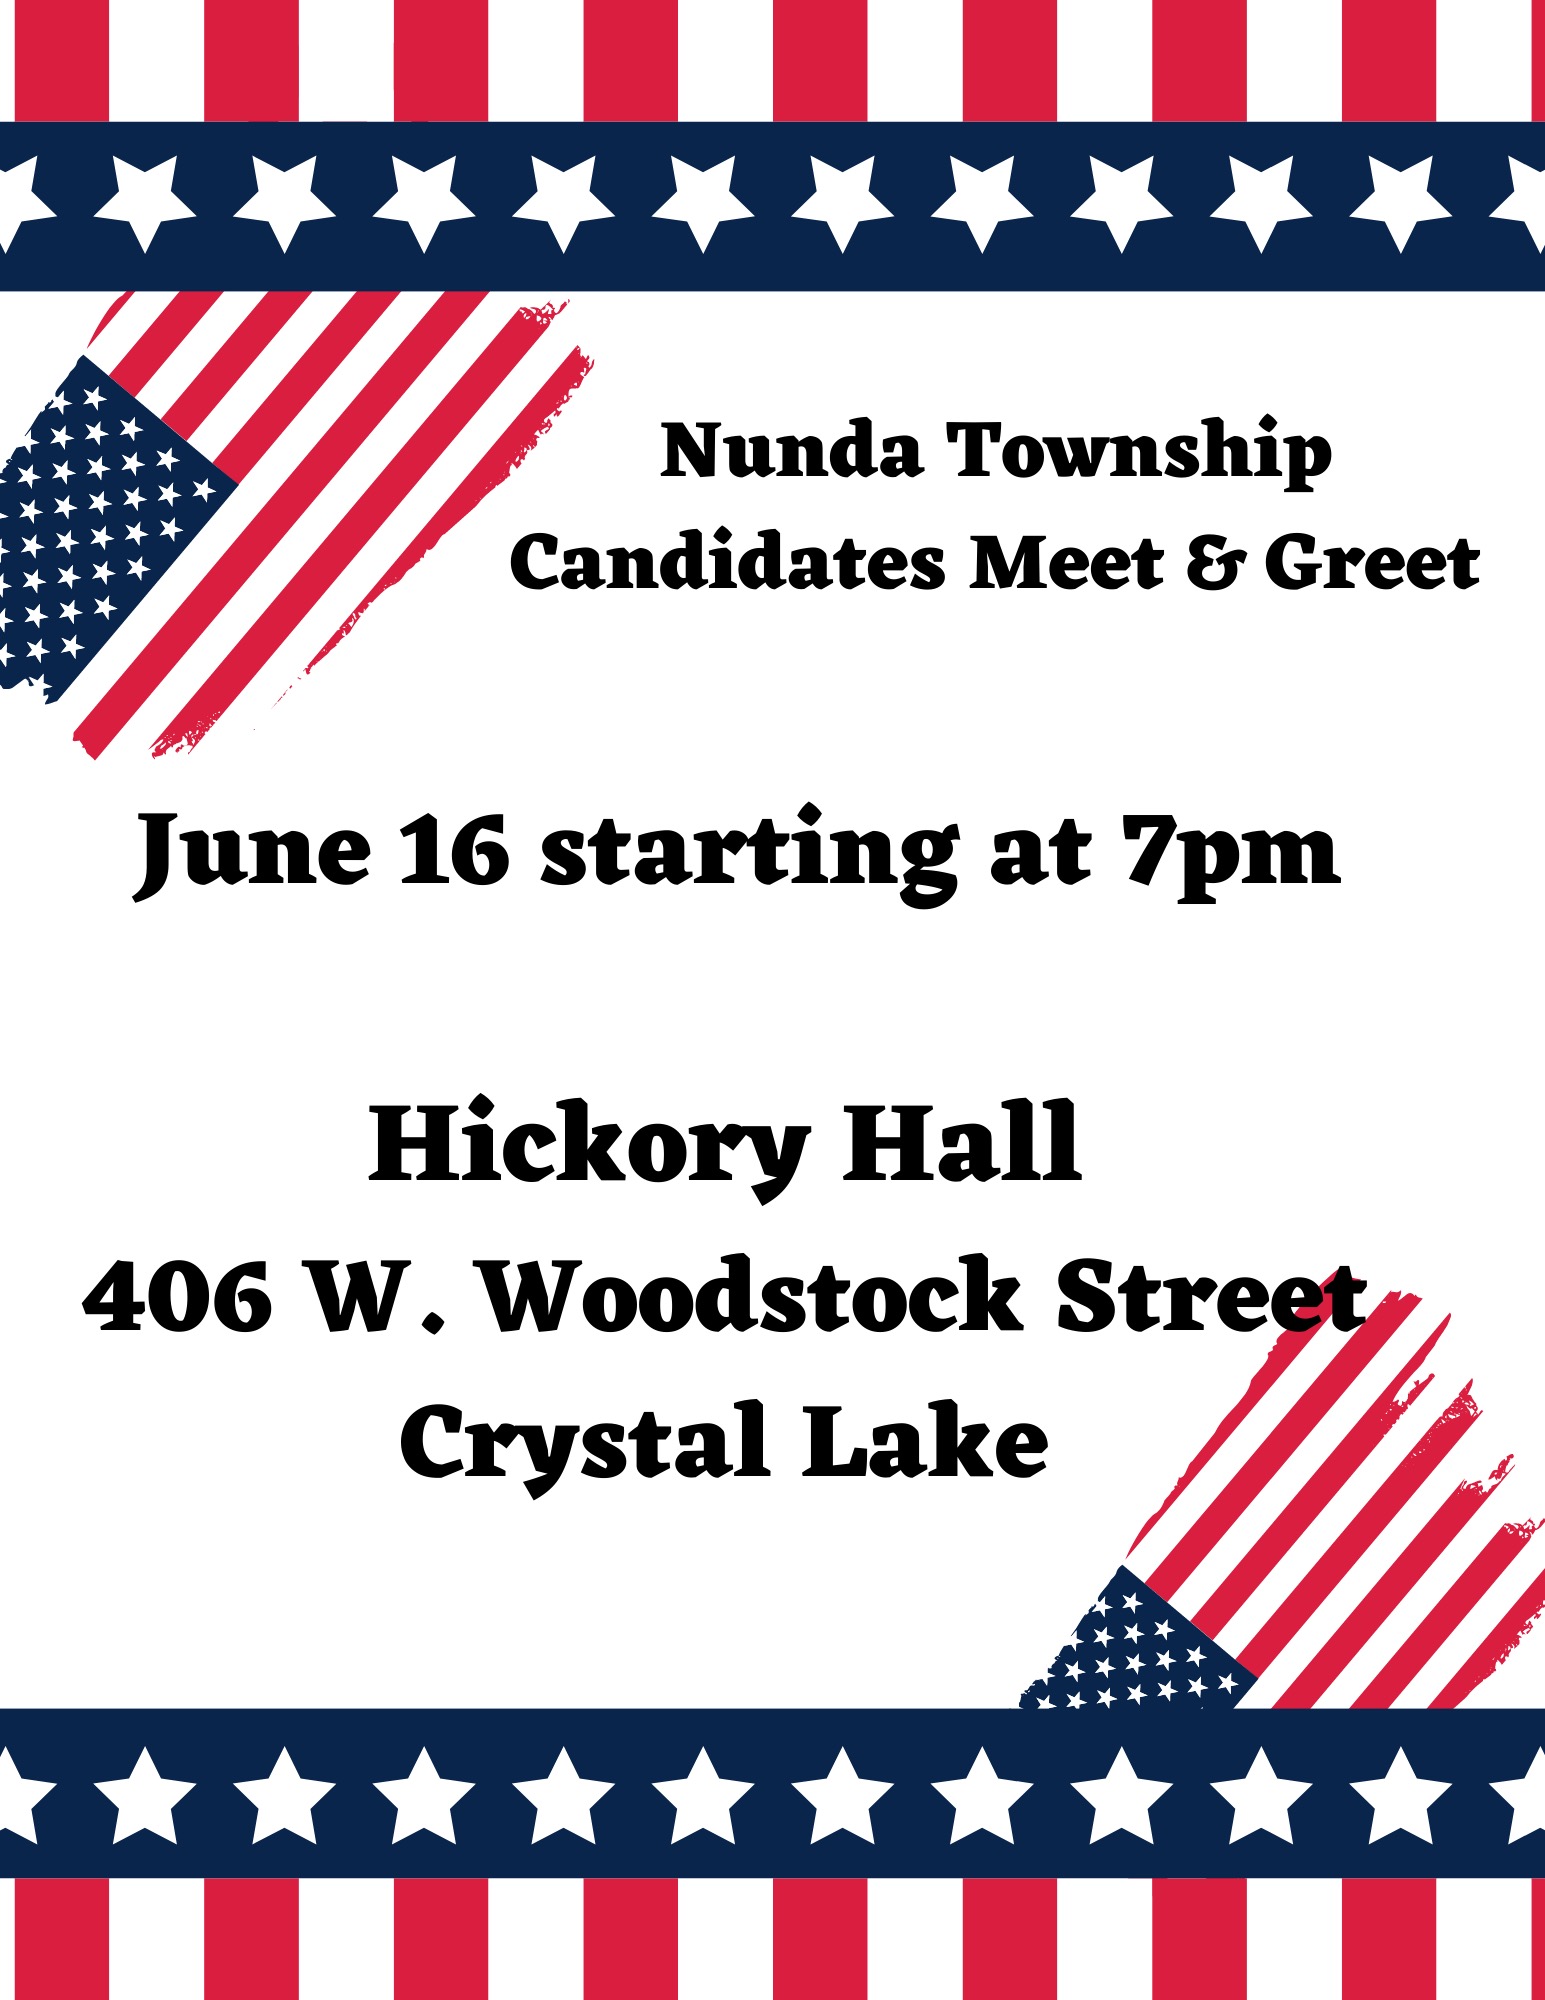 nunda township meet and greet June 16 at 7pm, hickory hall in crystal lake